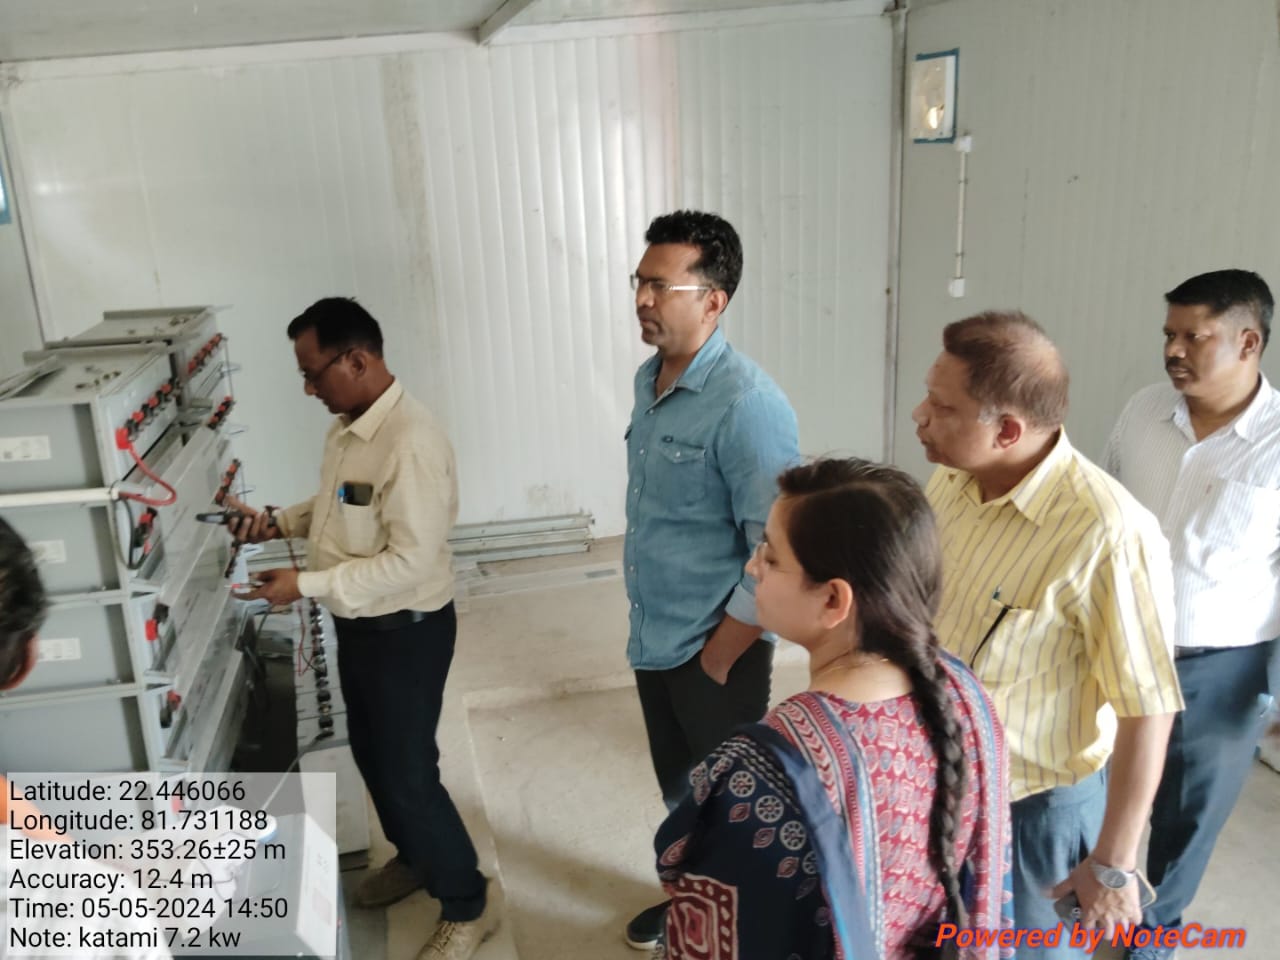 क्रेडा सी.ई.ओ. द्वारा जिला मुंगेली के अचानकमार टाईगर रिजर्व क्षेत्र के 25 ग्रामों के 112 बसाहटों में सौर संयंत्रों के माध्यम से 16 घंटे बिजली आपूर्ति हेतु ग्रामों का किया औचक निरीक्षण